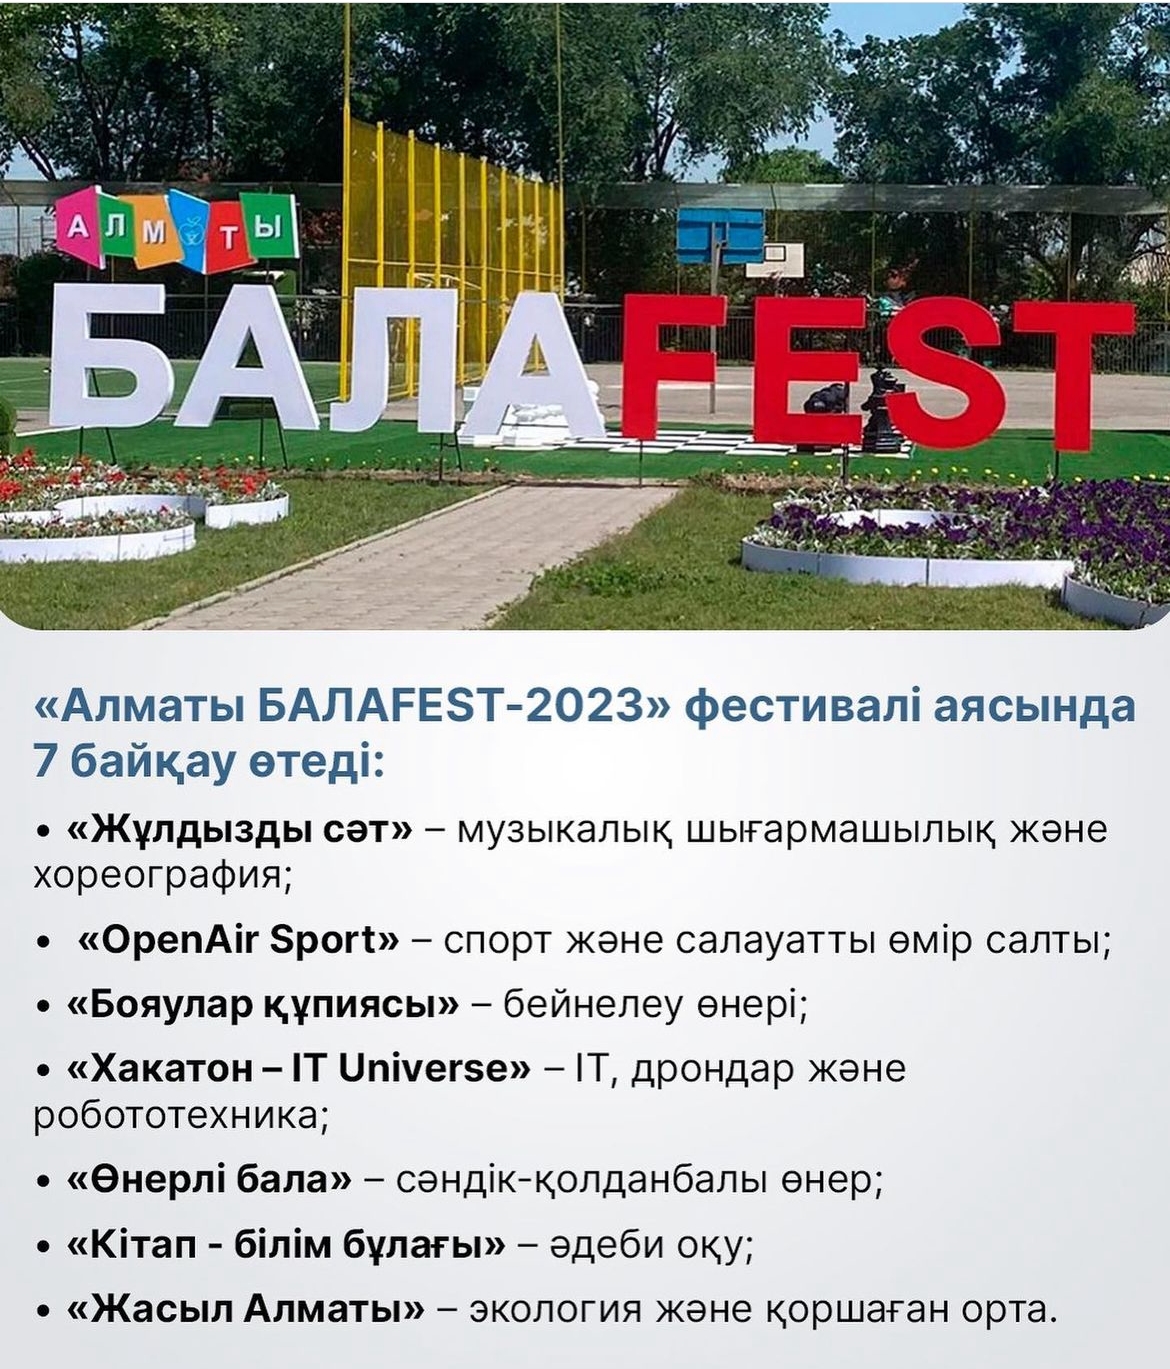 «Алматы БАЛАFEST-2023»